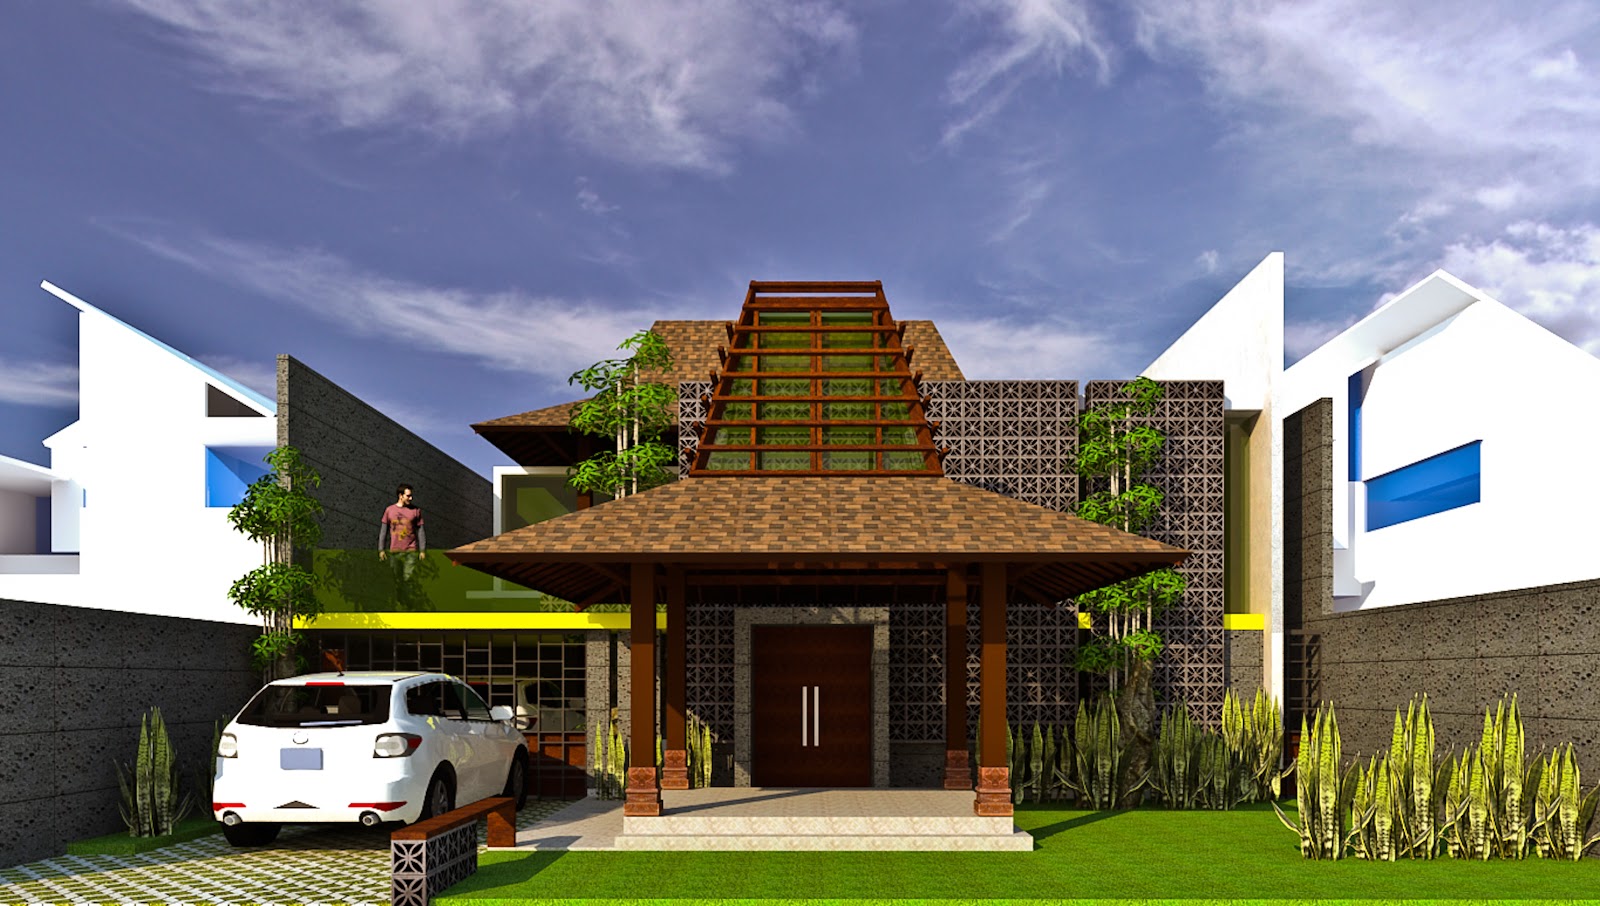 45 Desain Rumah Joglo Khas Jawa Tengah Desainrumahnyacom